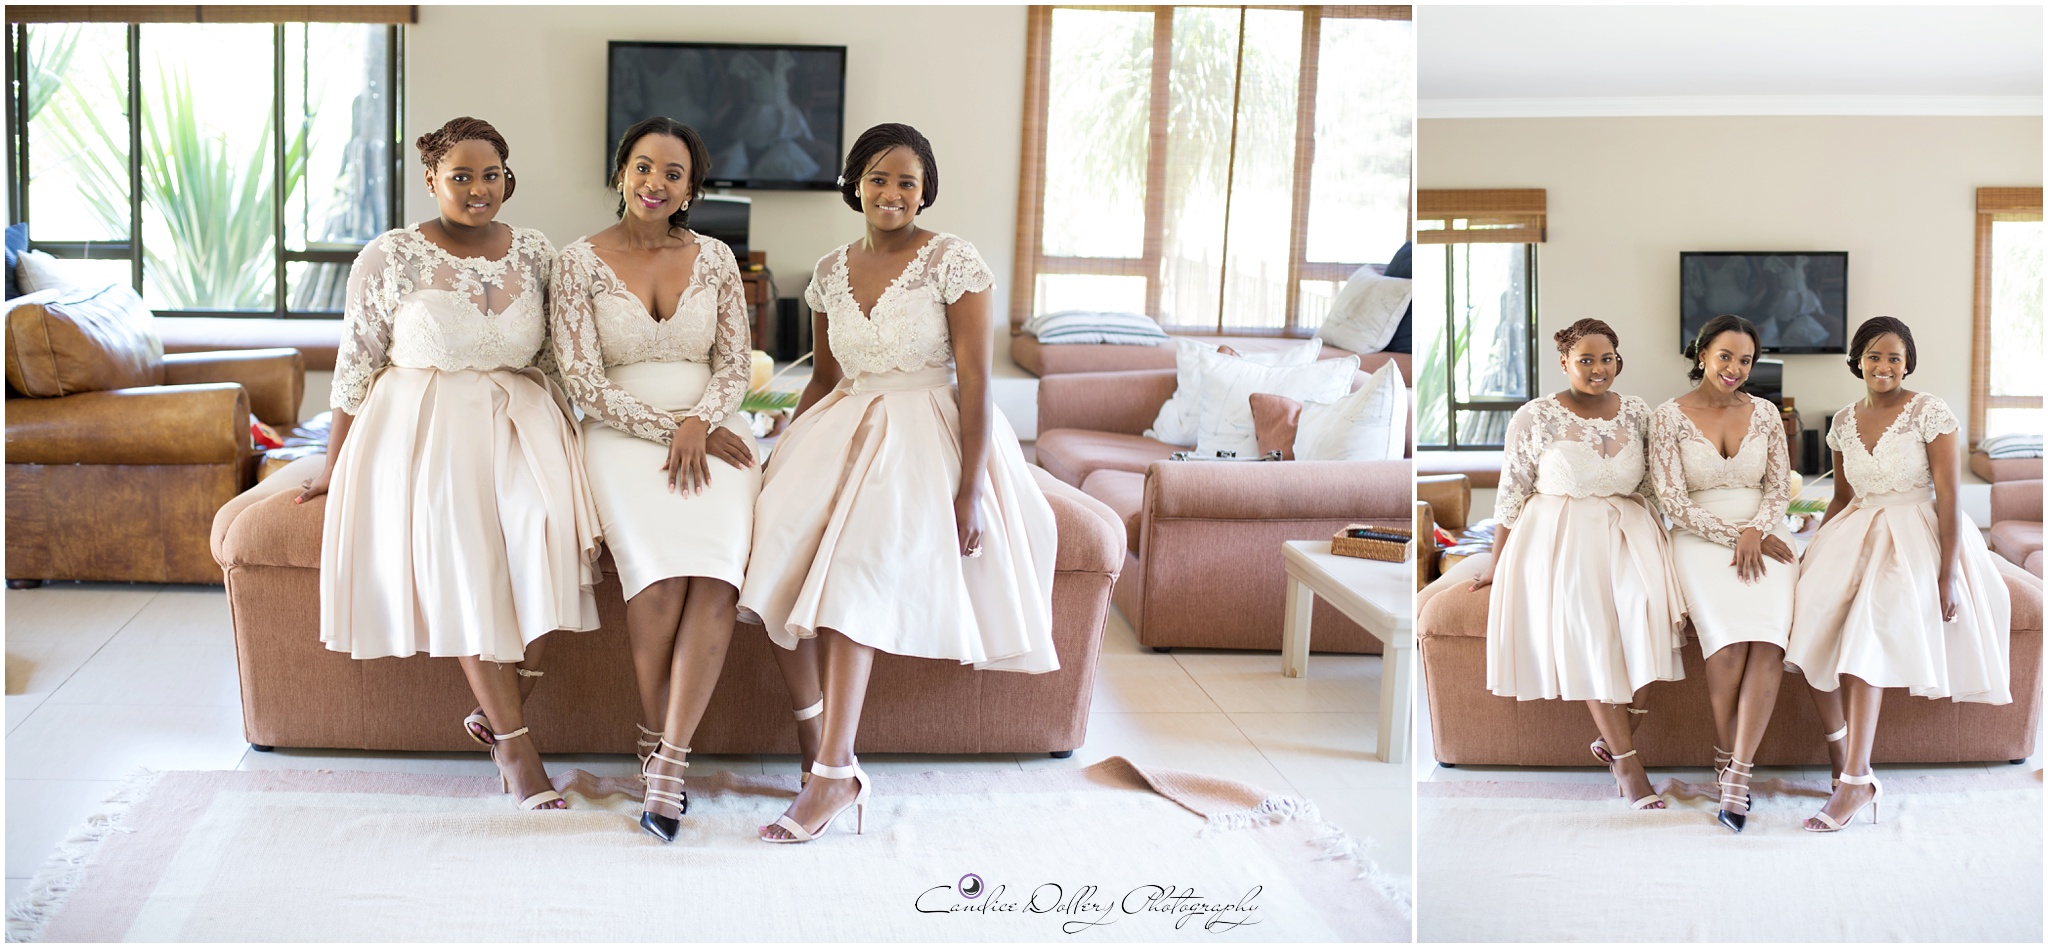 Buyi & Nathi's Wedding - Candice Dollery Photography_8380